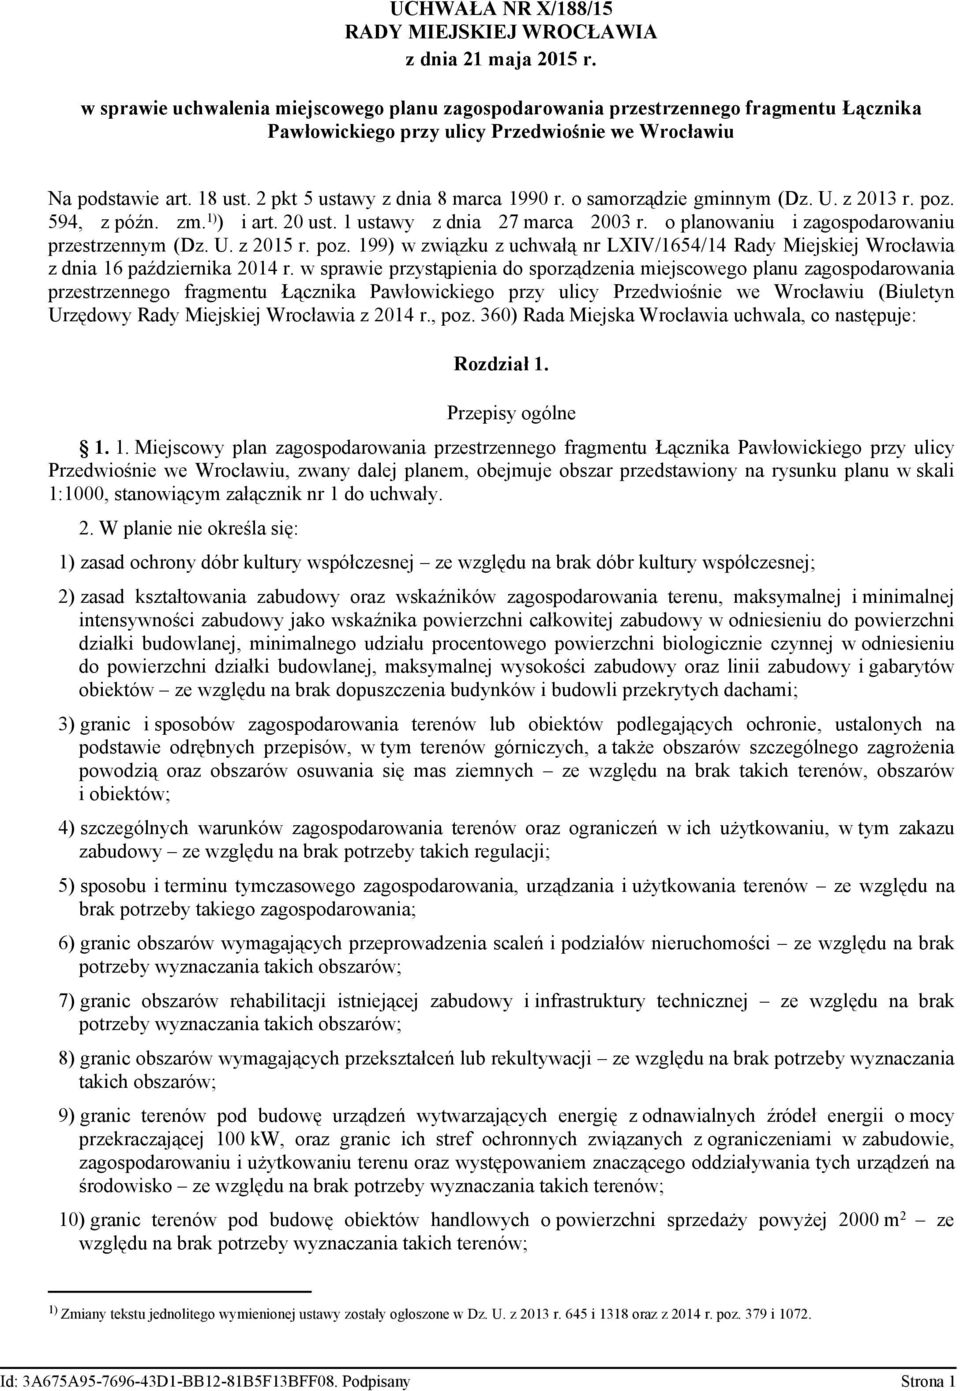 o samorządze gmnnym (Dz. U. z 2013 r. poz. 594, z późn. zm. 1) ) art. 20 ust. 1 ustawy z dna 27 marca 2003 r. o planowanu zagospodarowanu przestrzennym (Dz. U. z 2015 r. poz. 199) w zwązku z uchwałą nr LXIV/1654/14 Rady Mejskej Wrocława z dna 16 paźdzernka 2014 r.